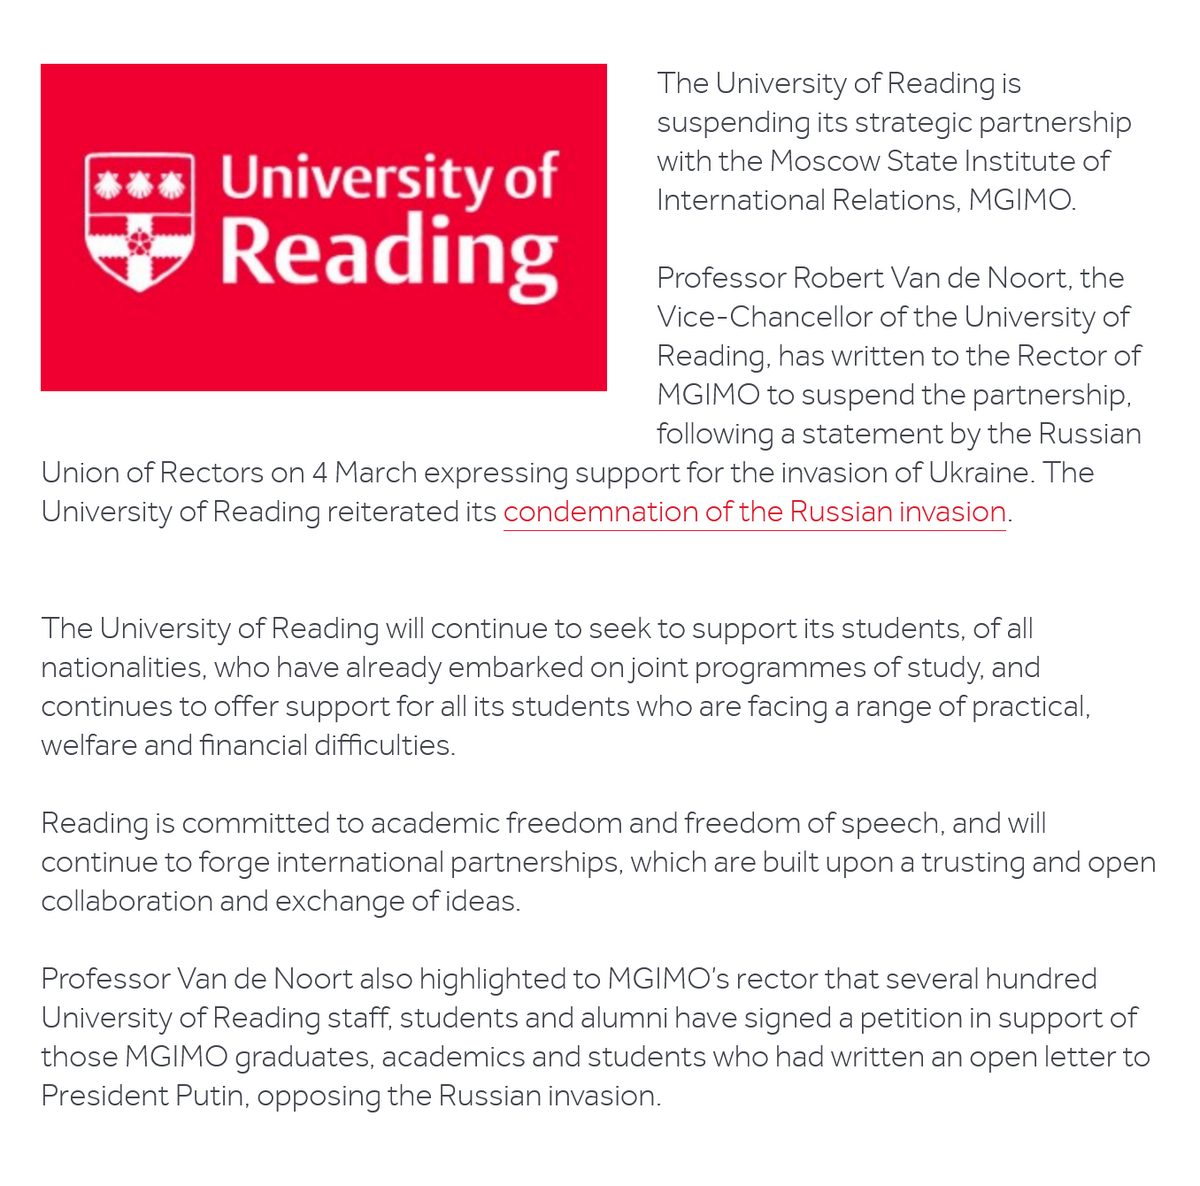 Объявление о приостановке сотрудничества с МГИМО на официальном сайте Редингского университета